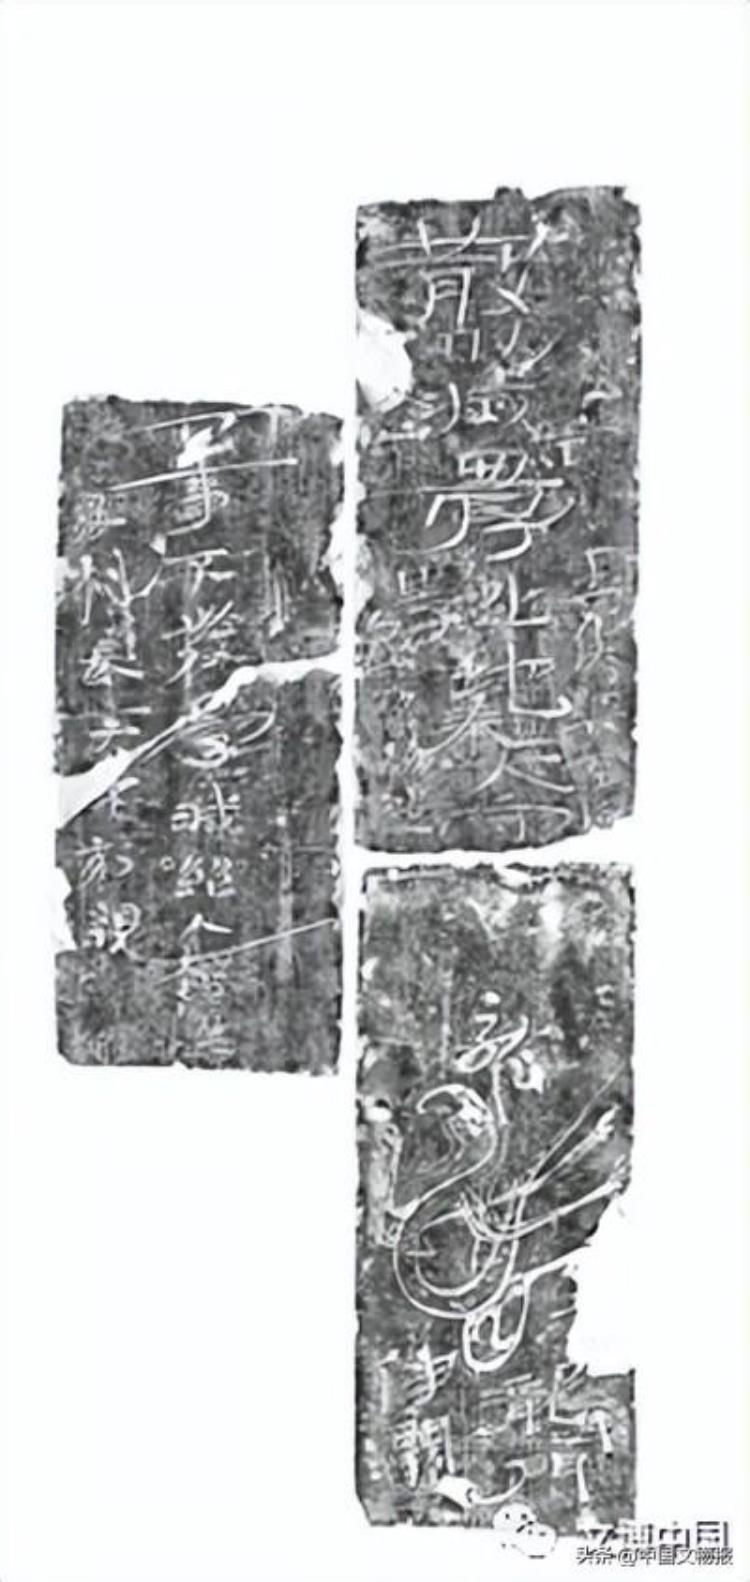 新发现-西安国际港务区贺韶北村东汉墓地考古发掘收获